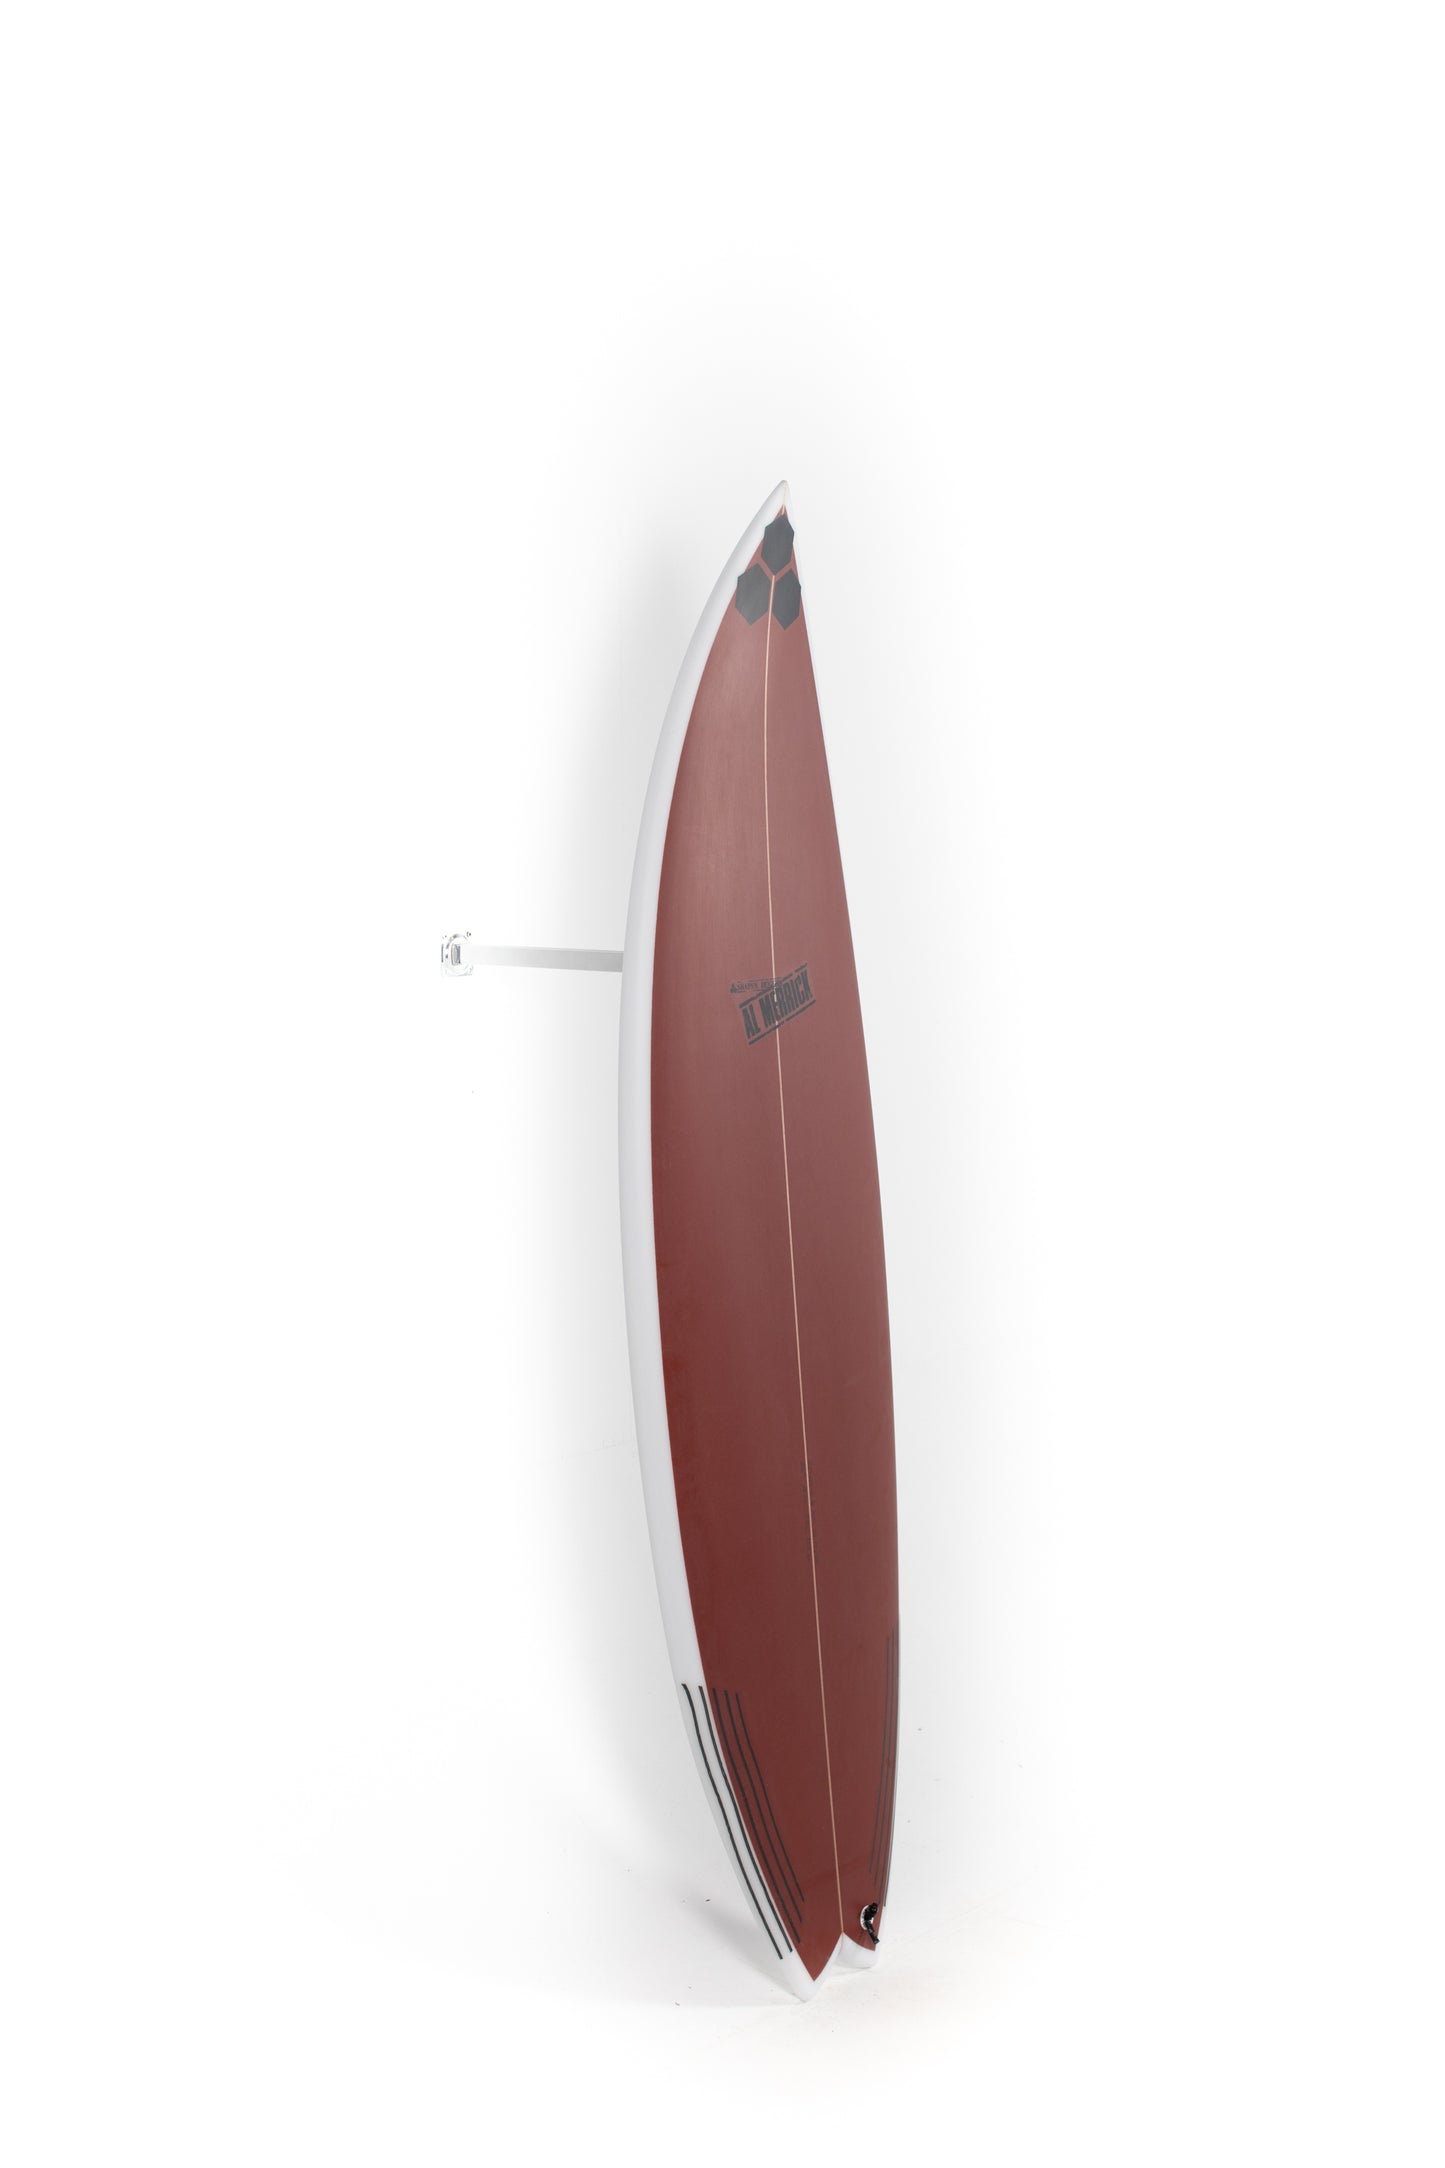 
                  
                    Pukas Surf Shop - Channel Islands - OG Flyer by Al Merrick - 6'0" x 19 3/4 x 2 9/16 x 32,6L - CI27627
                  
                